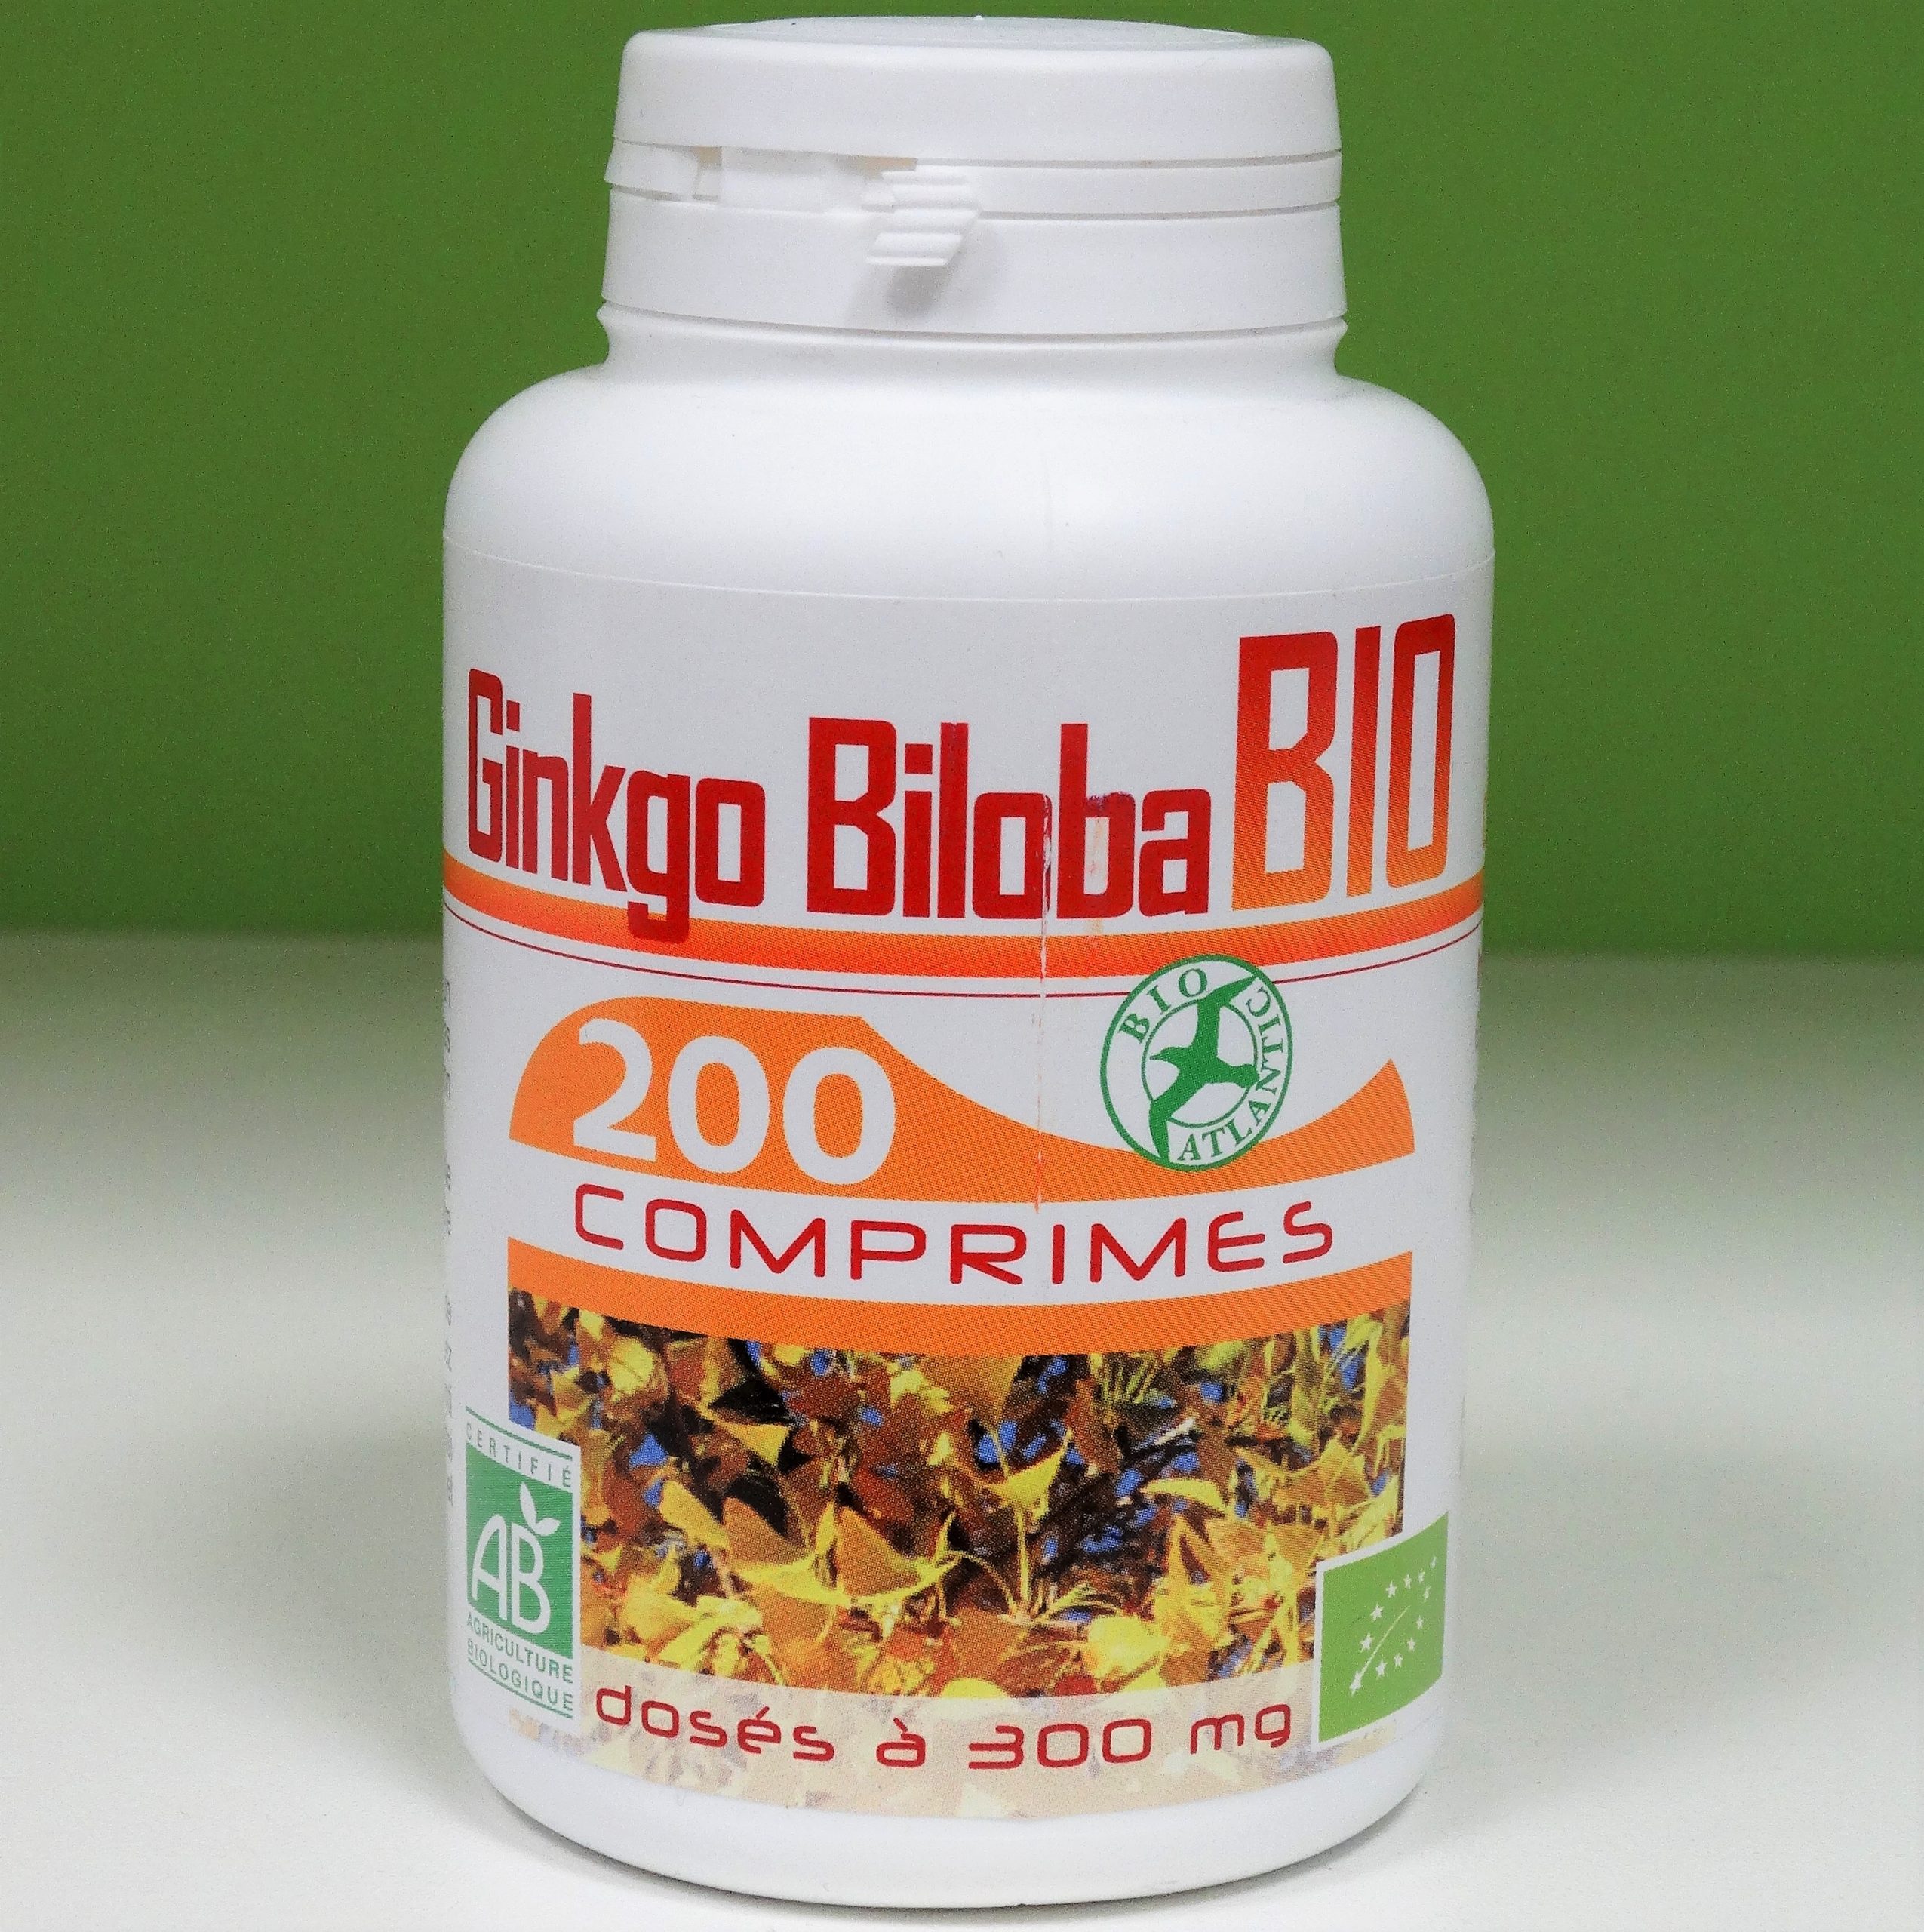 Comprar Ginkgo Biloba Bio en Andorra Farmacia onlina Complemento alimenticio ecológico a base Ginkgo Biloba